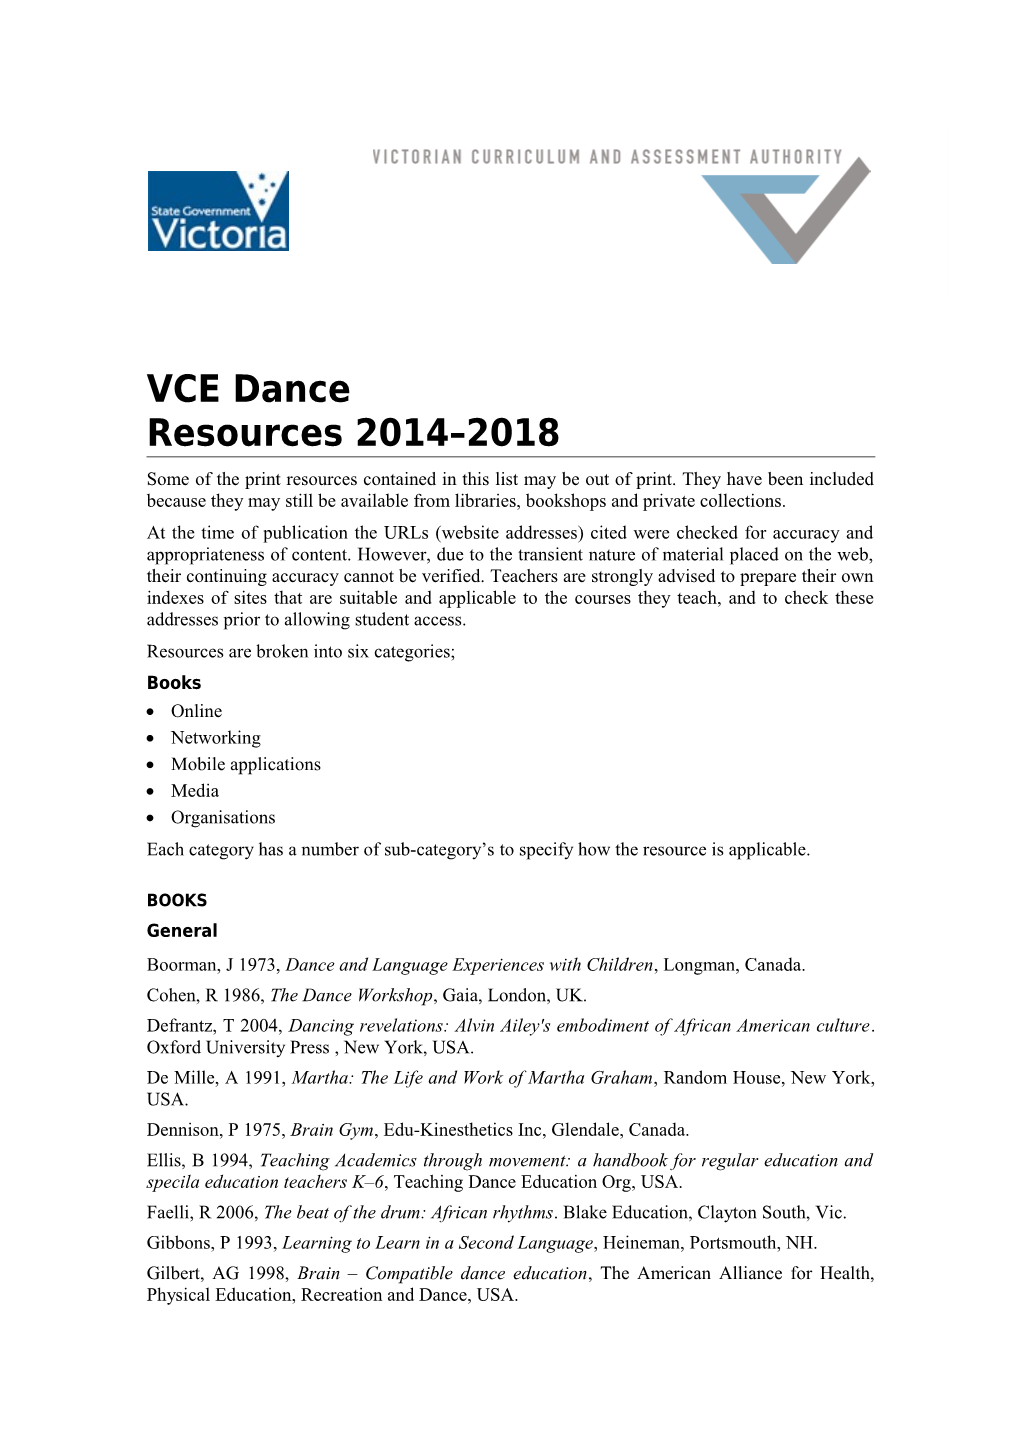 VCE Dance Resources 2014-2018